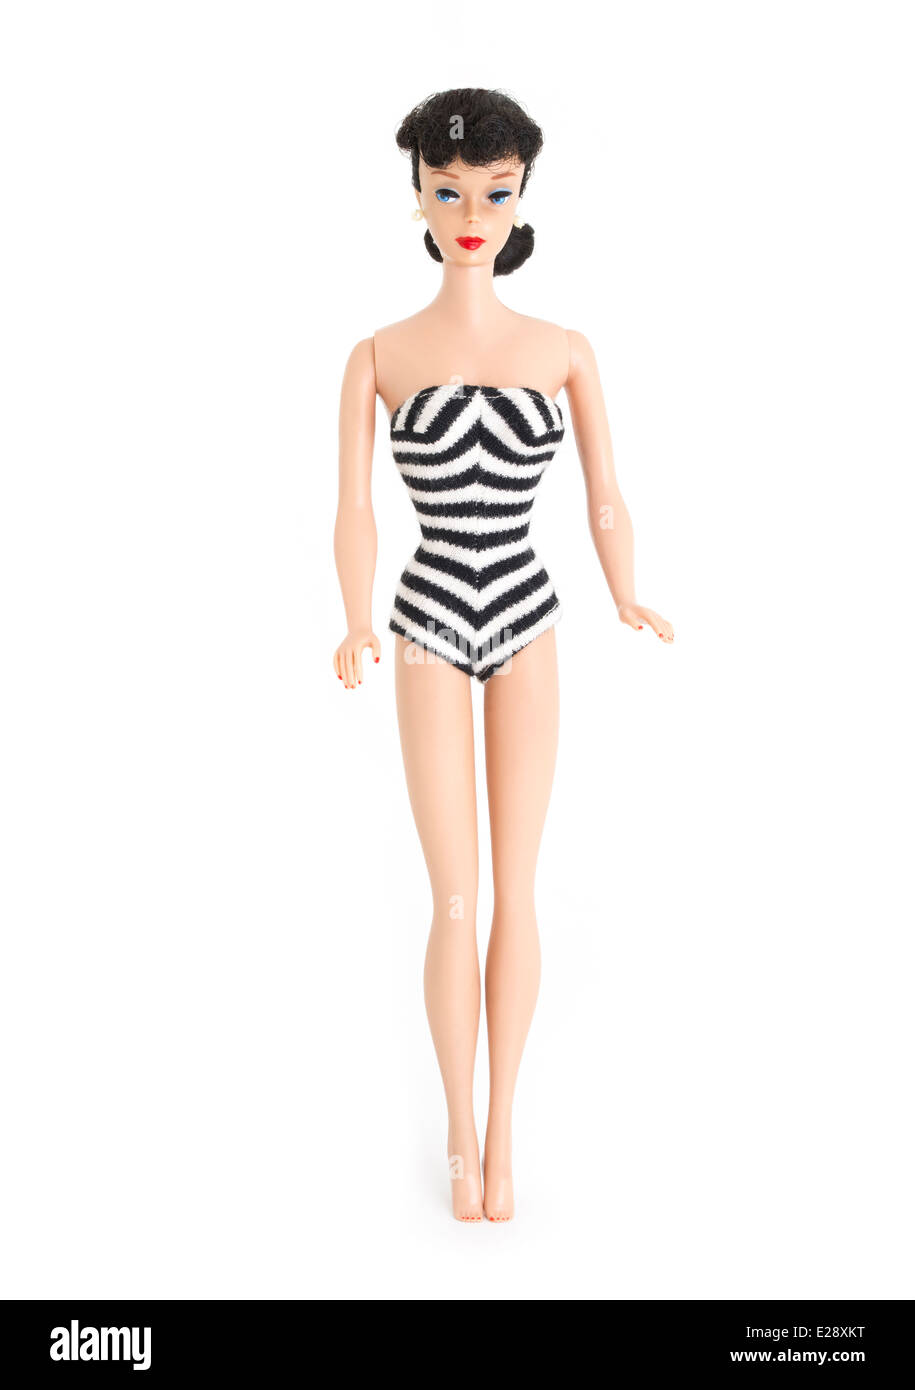 Poupée de mode BARBIE de Mattel, Inc. 1959 Modèle # 5 brunette, queue, noir et blanc zebra maillot, jambe droite. Banque D'Images